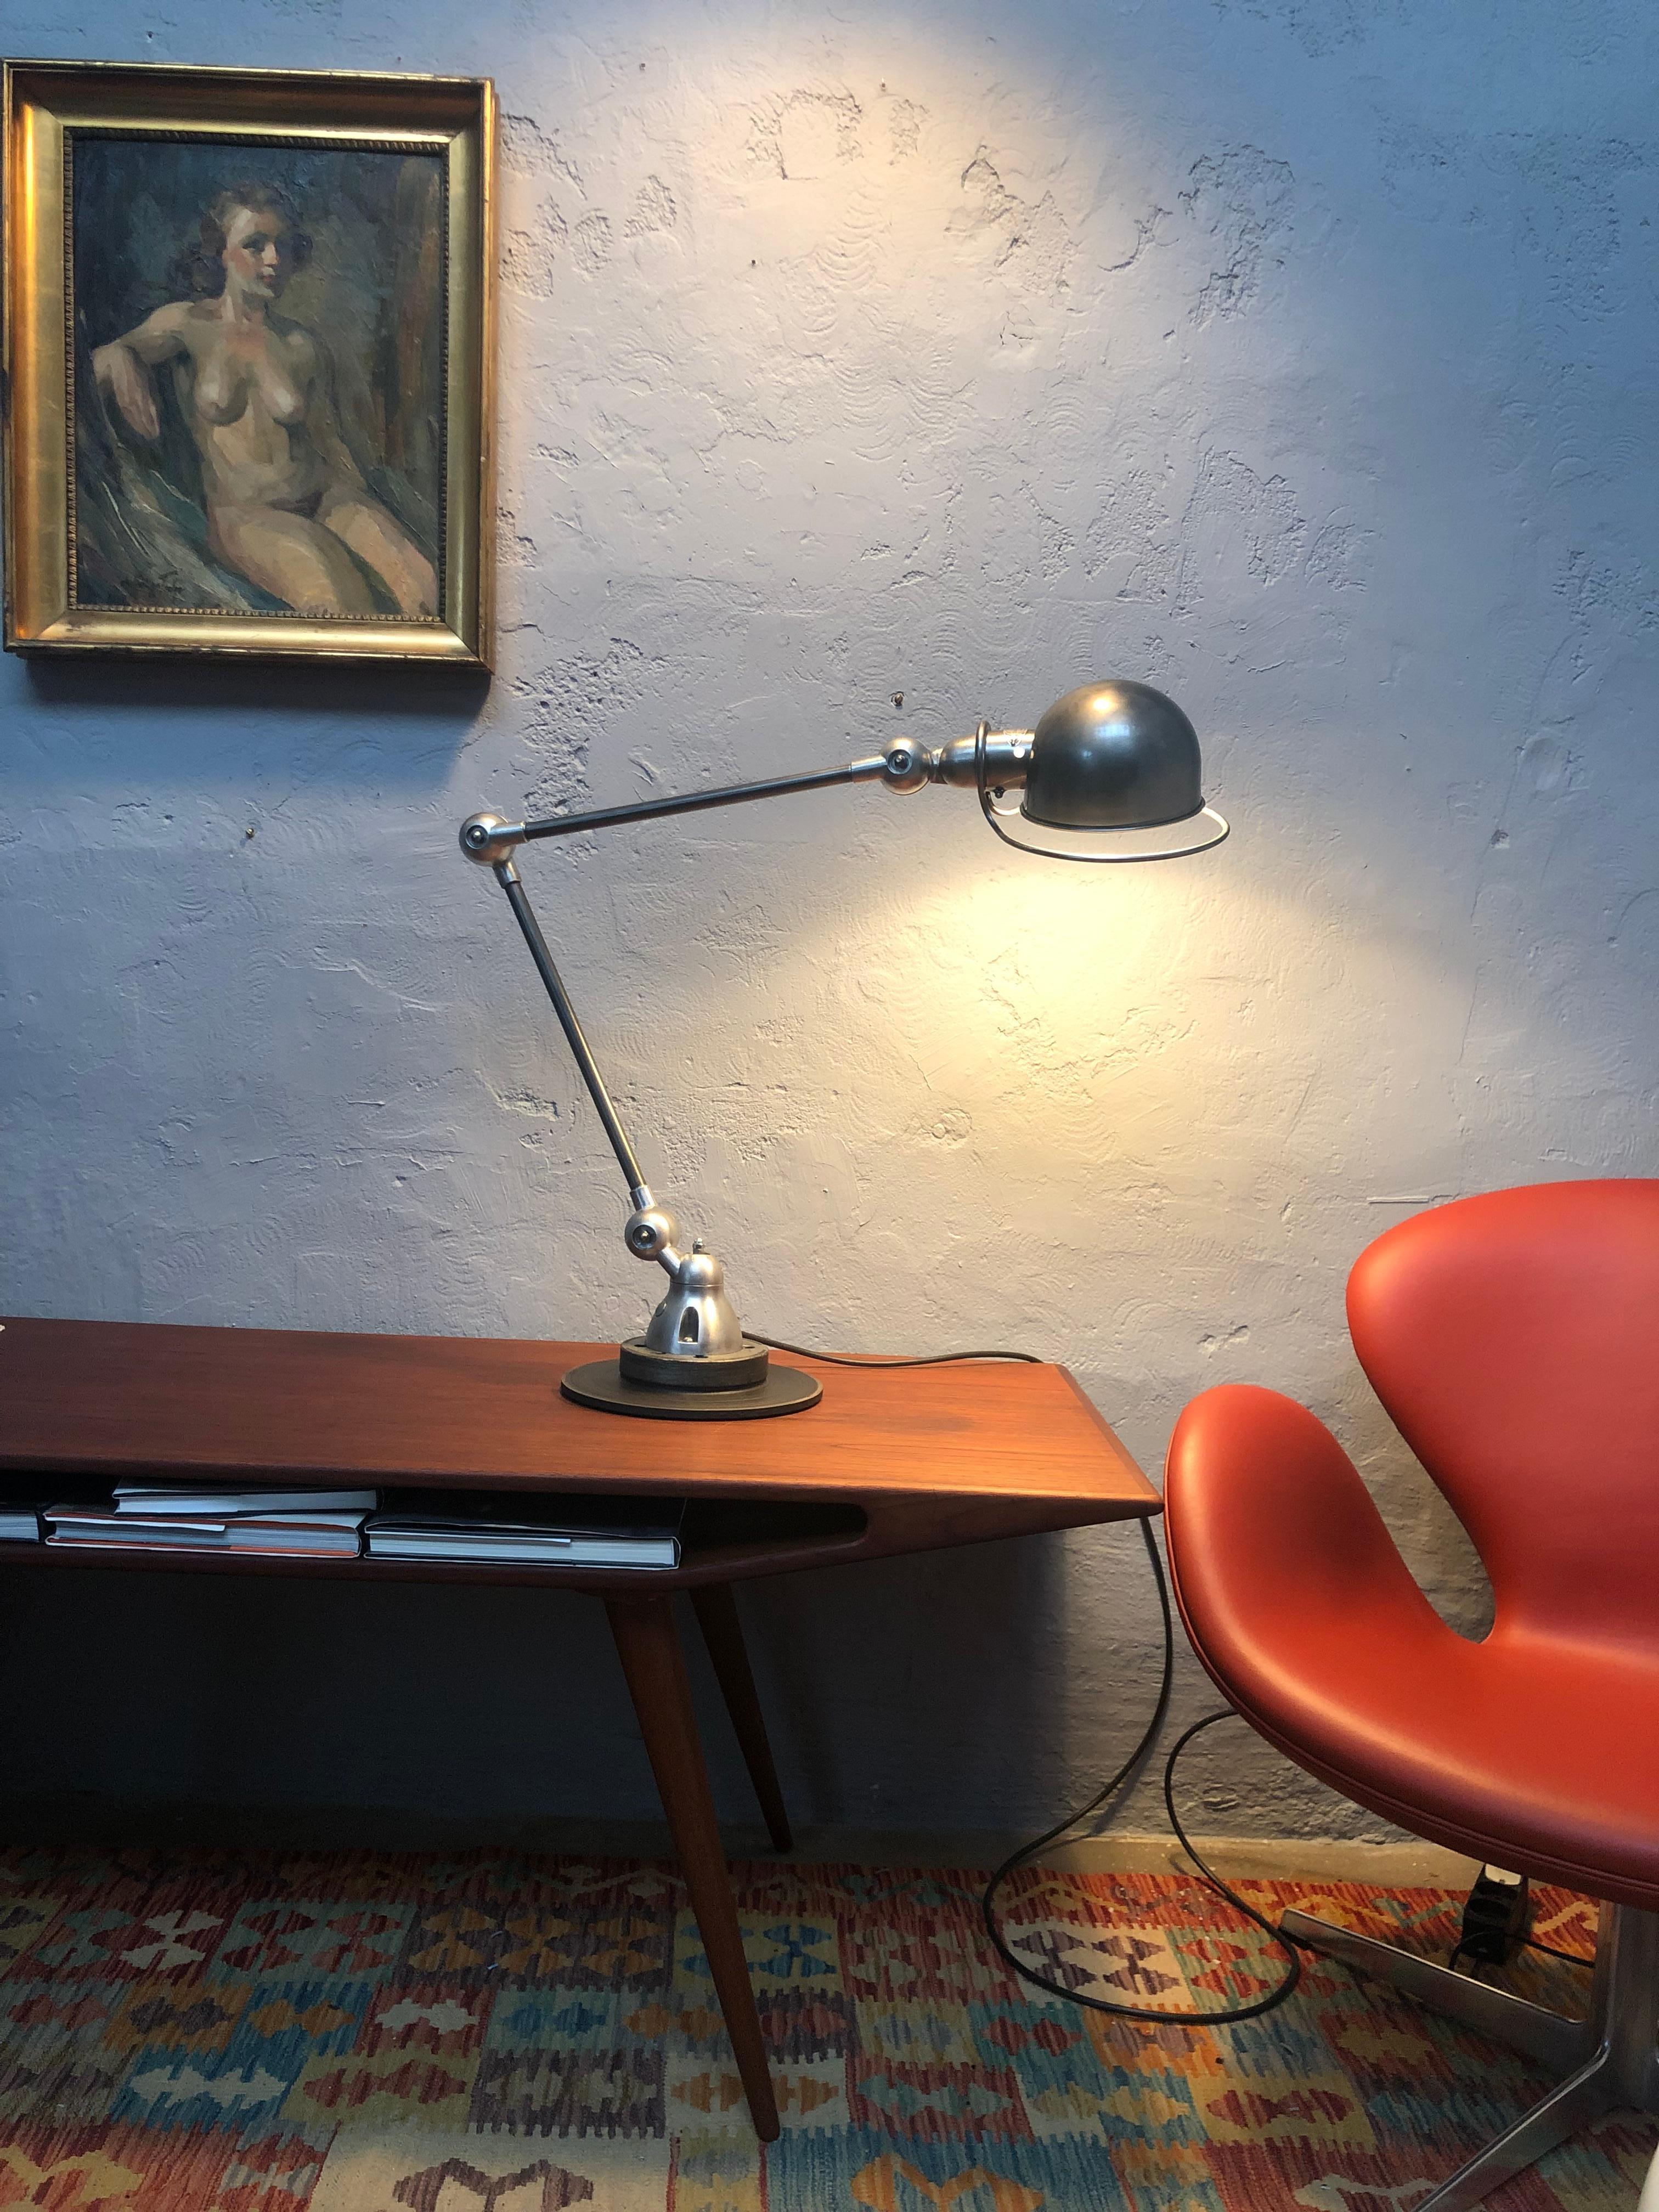 Une lampe industrielle à deux bras du milieu du siècle par Jielde de France.
Une lampe sans fil, fonctionnelle, adaptée à tous les usages et entièrement articulée,
grâce à ce design unique.
Avec une base qui peut tourner à 360 degrés et un